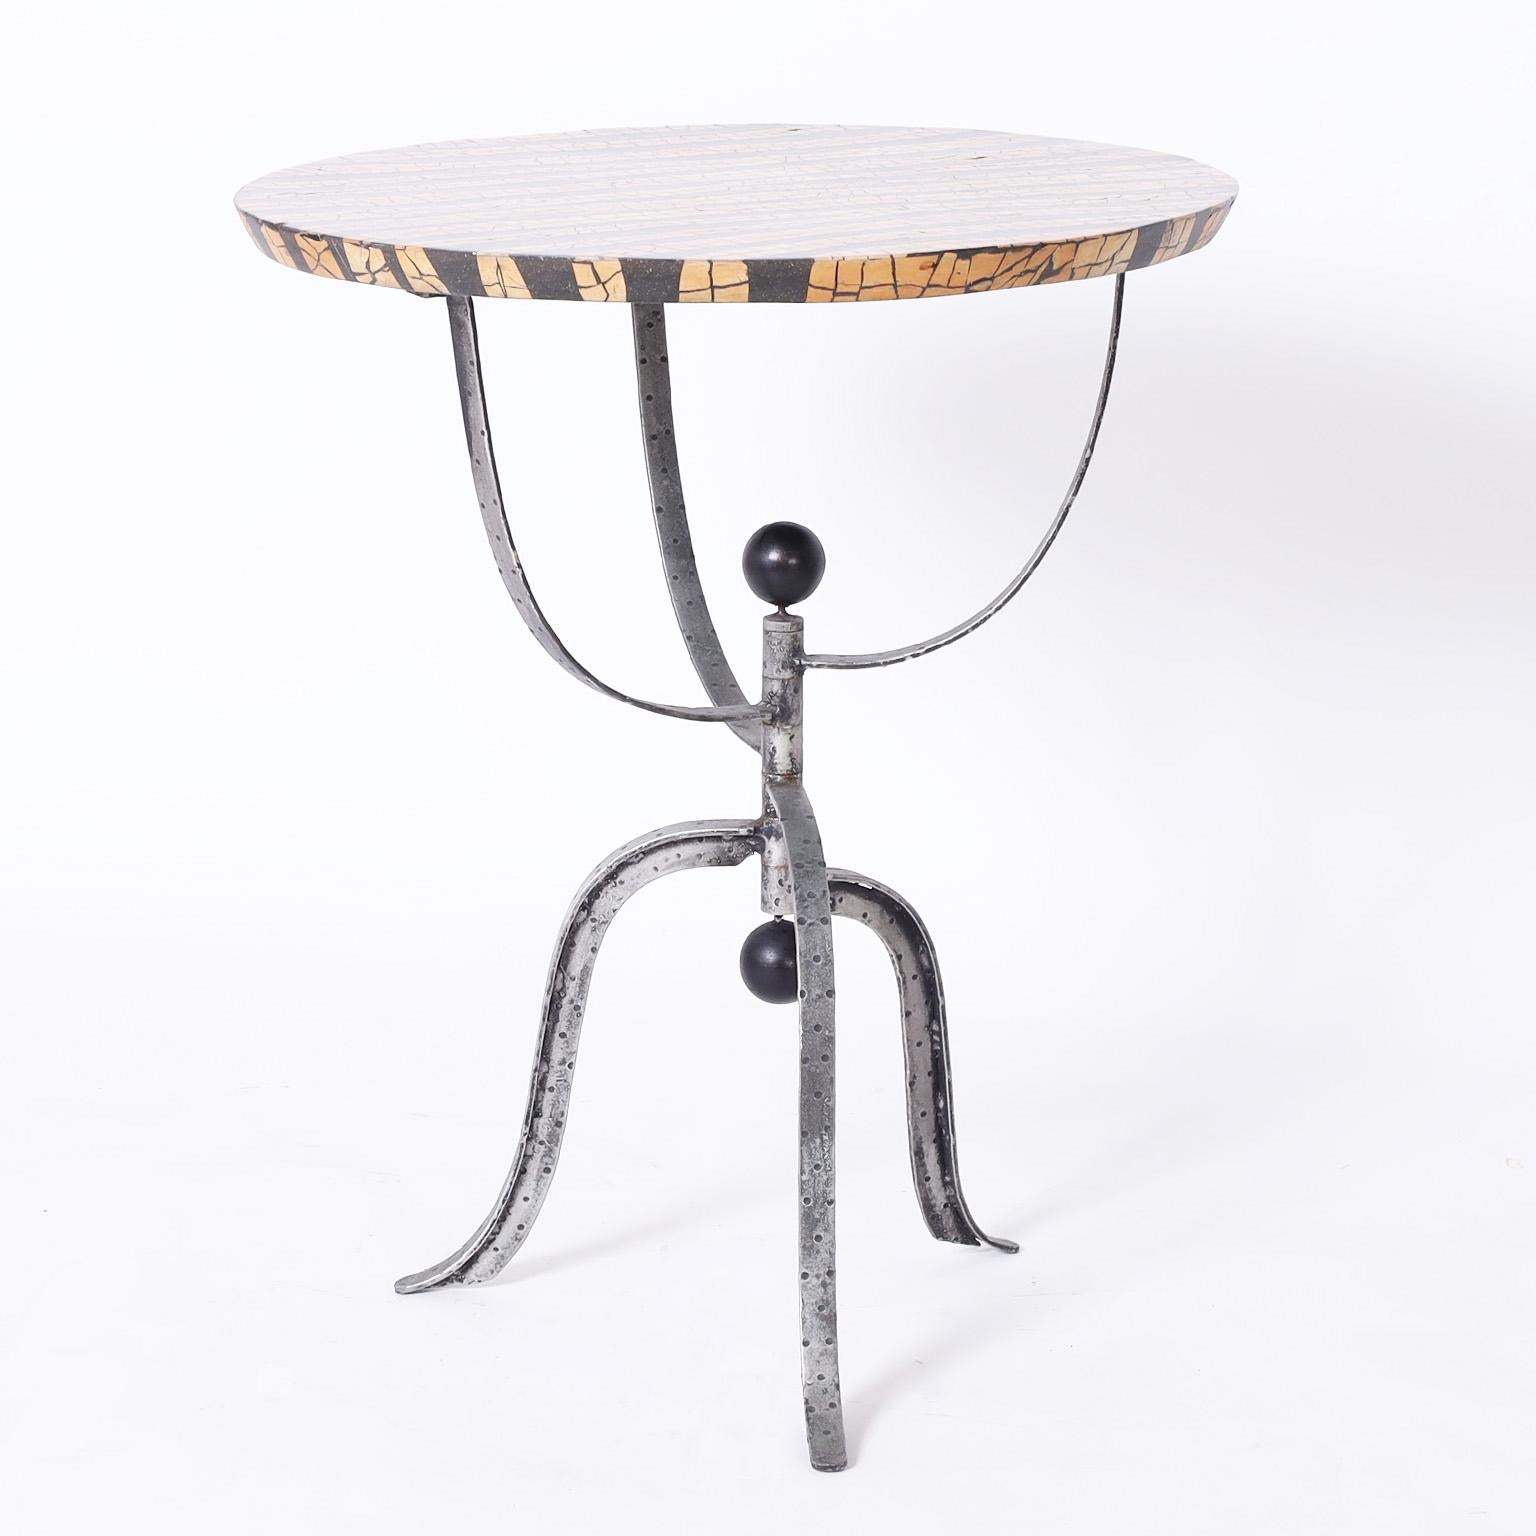 Ungewöhnlicher modernistischer Ständer oder Tisch mit einer runden Platte aus Kokosnussmosaik über einem handgeschmiedeten dreibeinigen Sockel im postmodernen Stil mit runden schwarzen Endstücken.